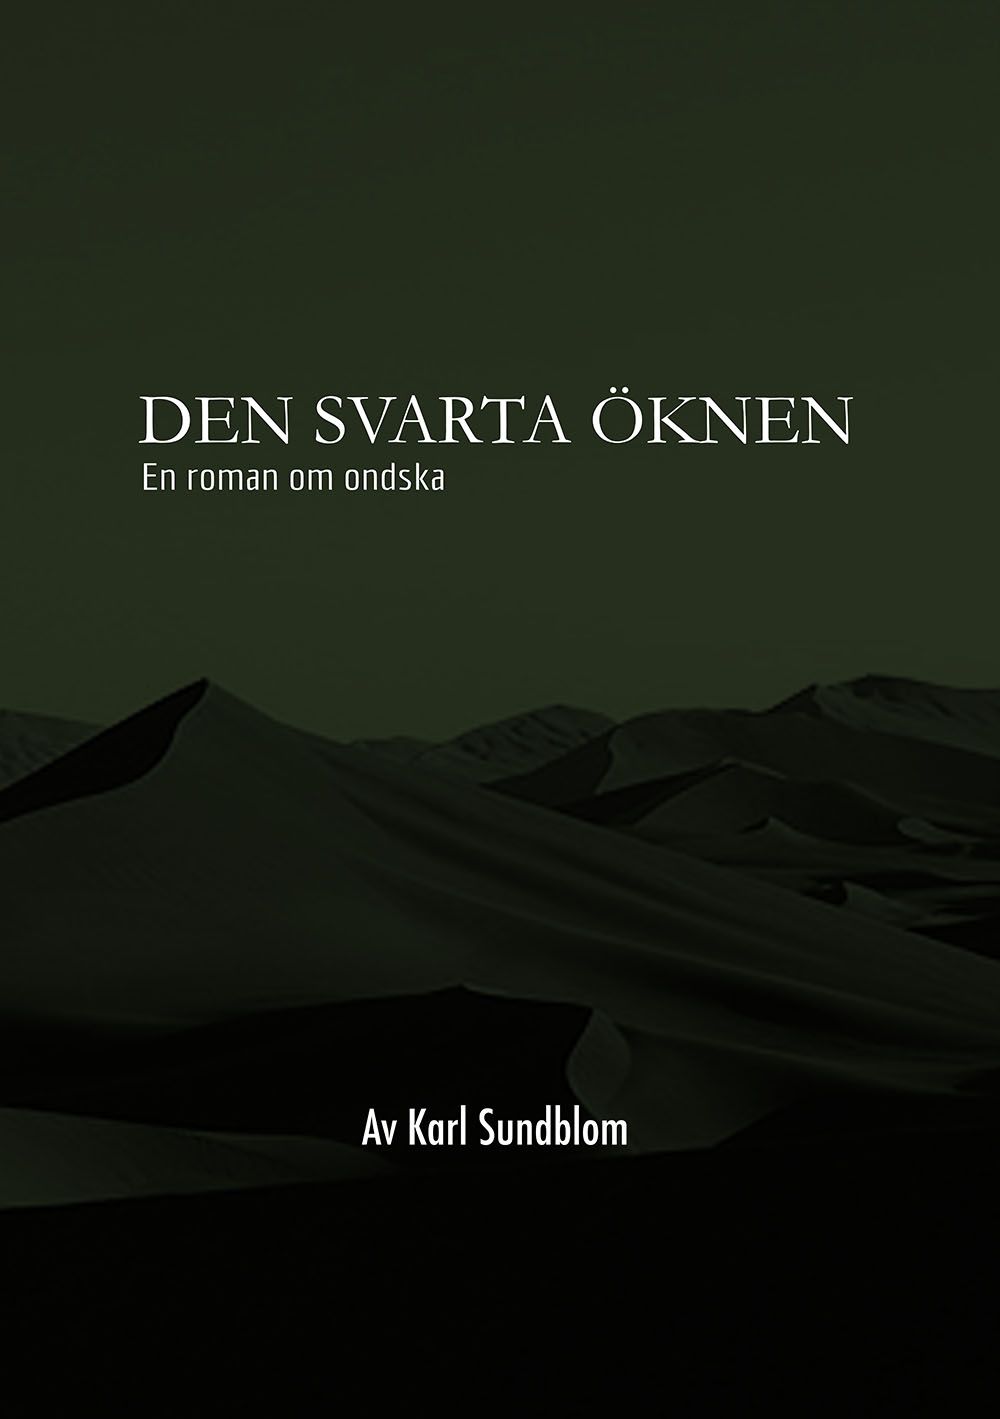 DEN SVARTA ÖKNEN, e-bok av Karl Sundblom